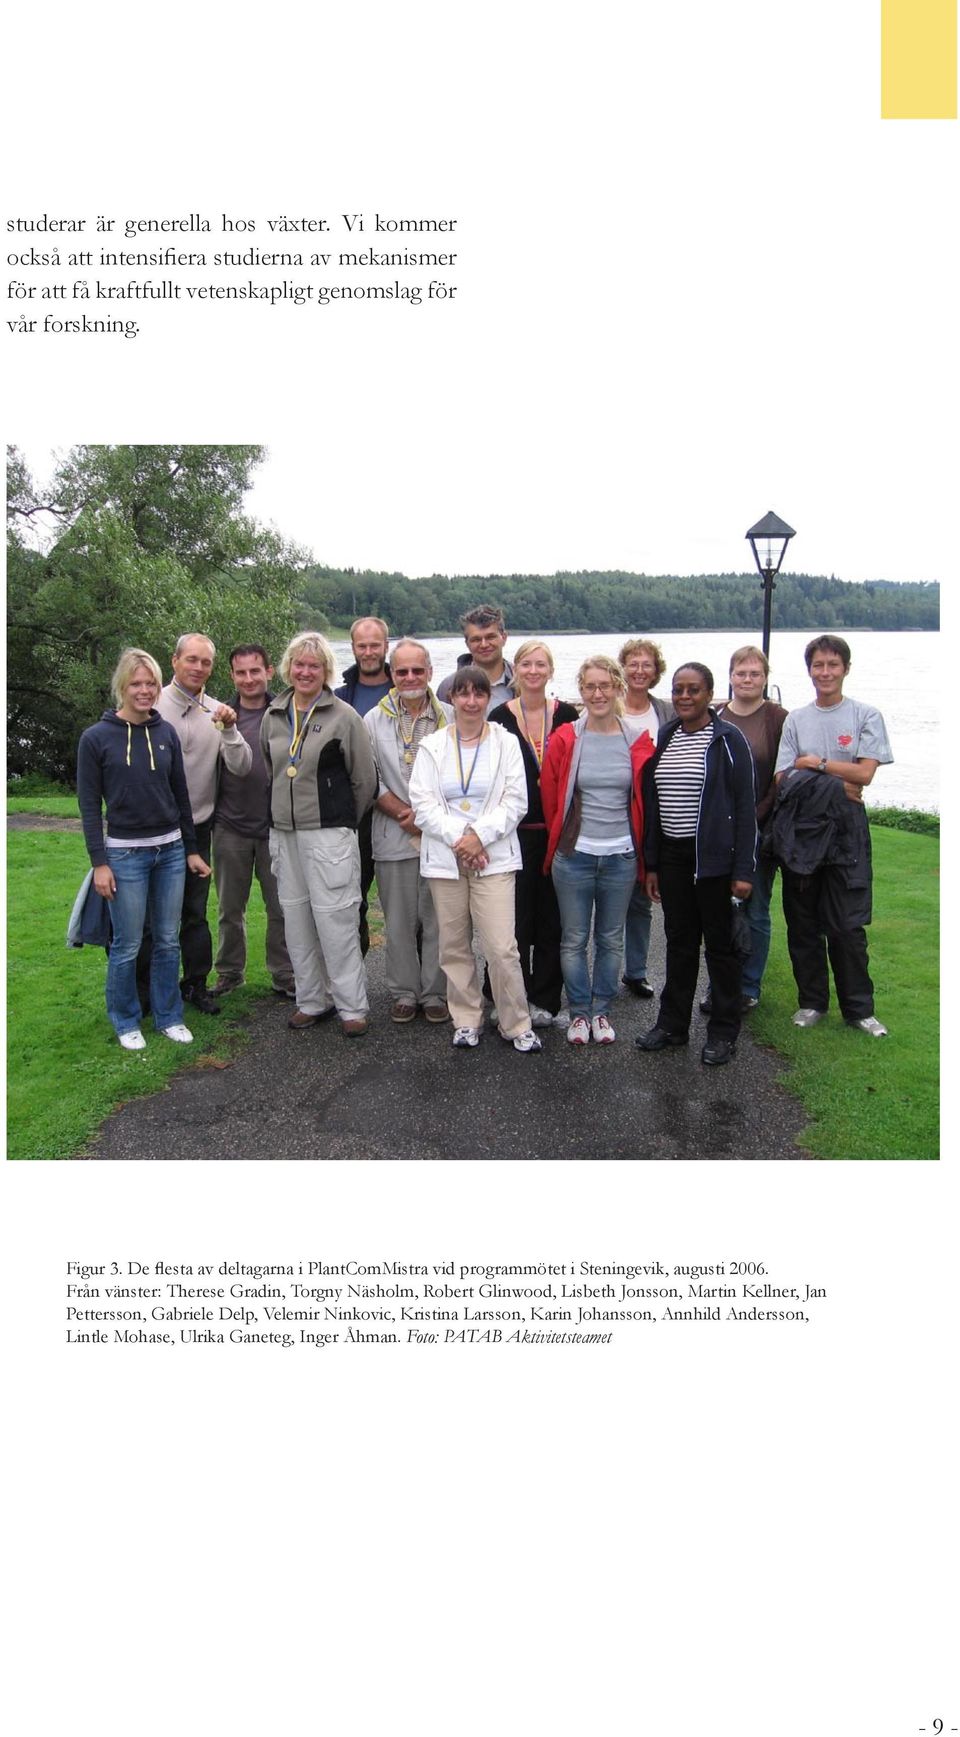 De flesta av deltagarna i PlantComMistra vid programmötet i Steningevik, augusti 2006.